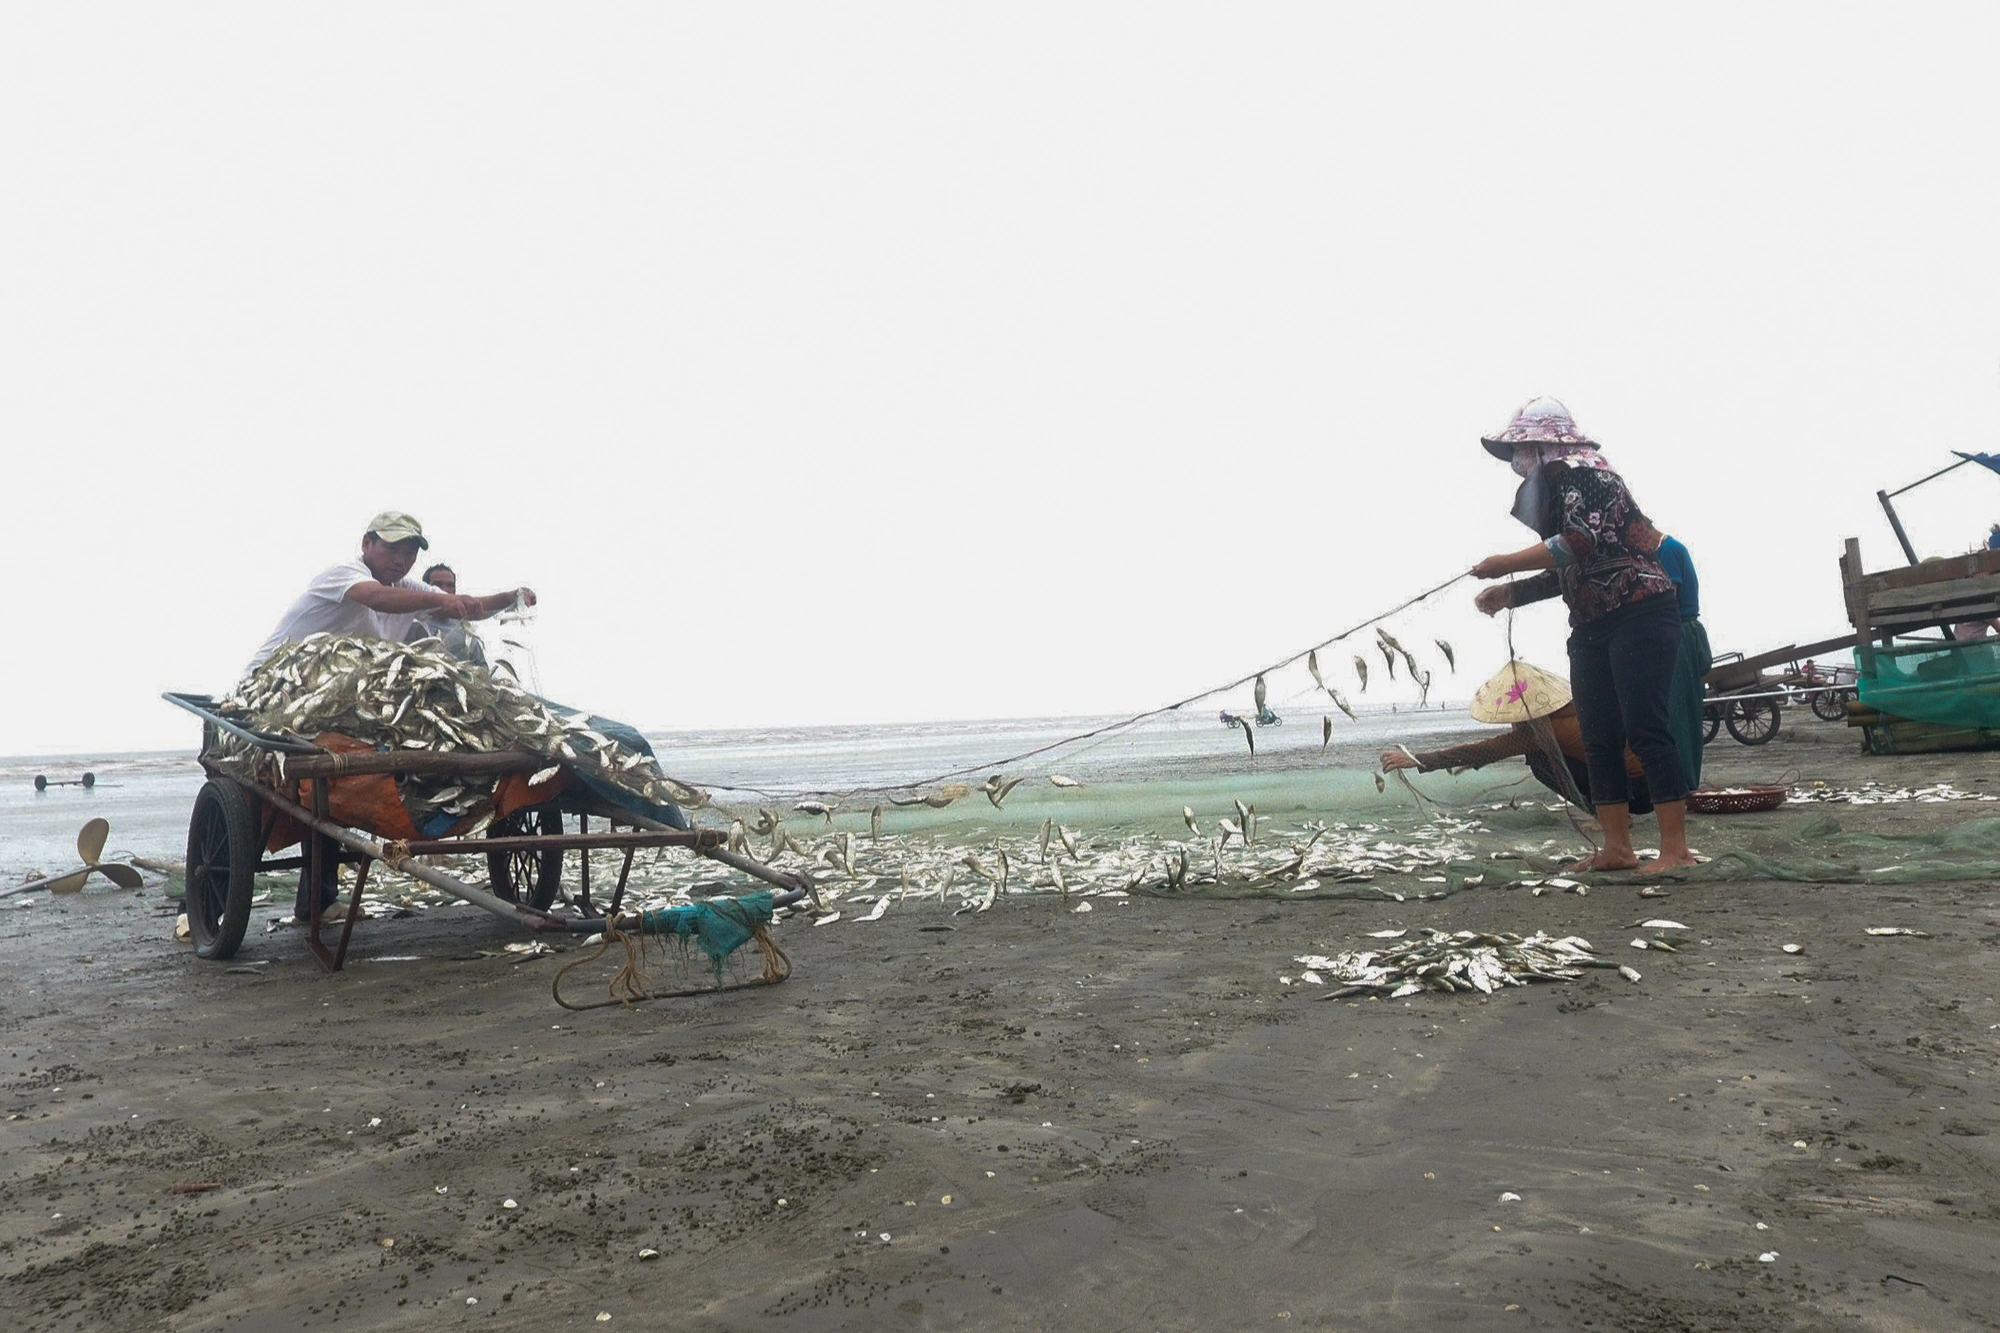 Phụ nữ làng biển mướt mồ hôi nướng cá bên bếp lửa giữa trưa 39 độ C - 2